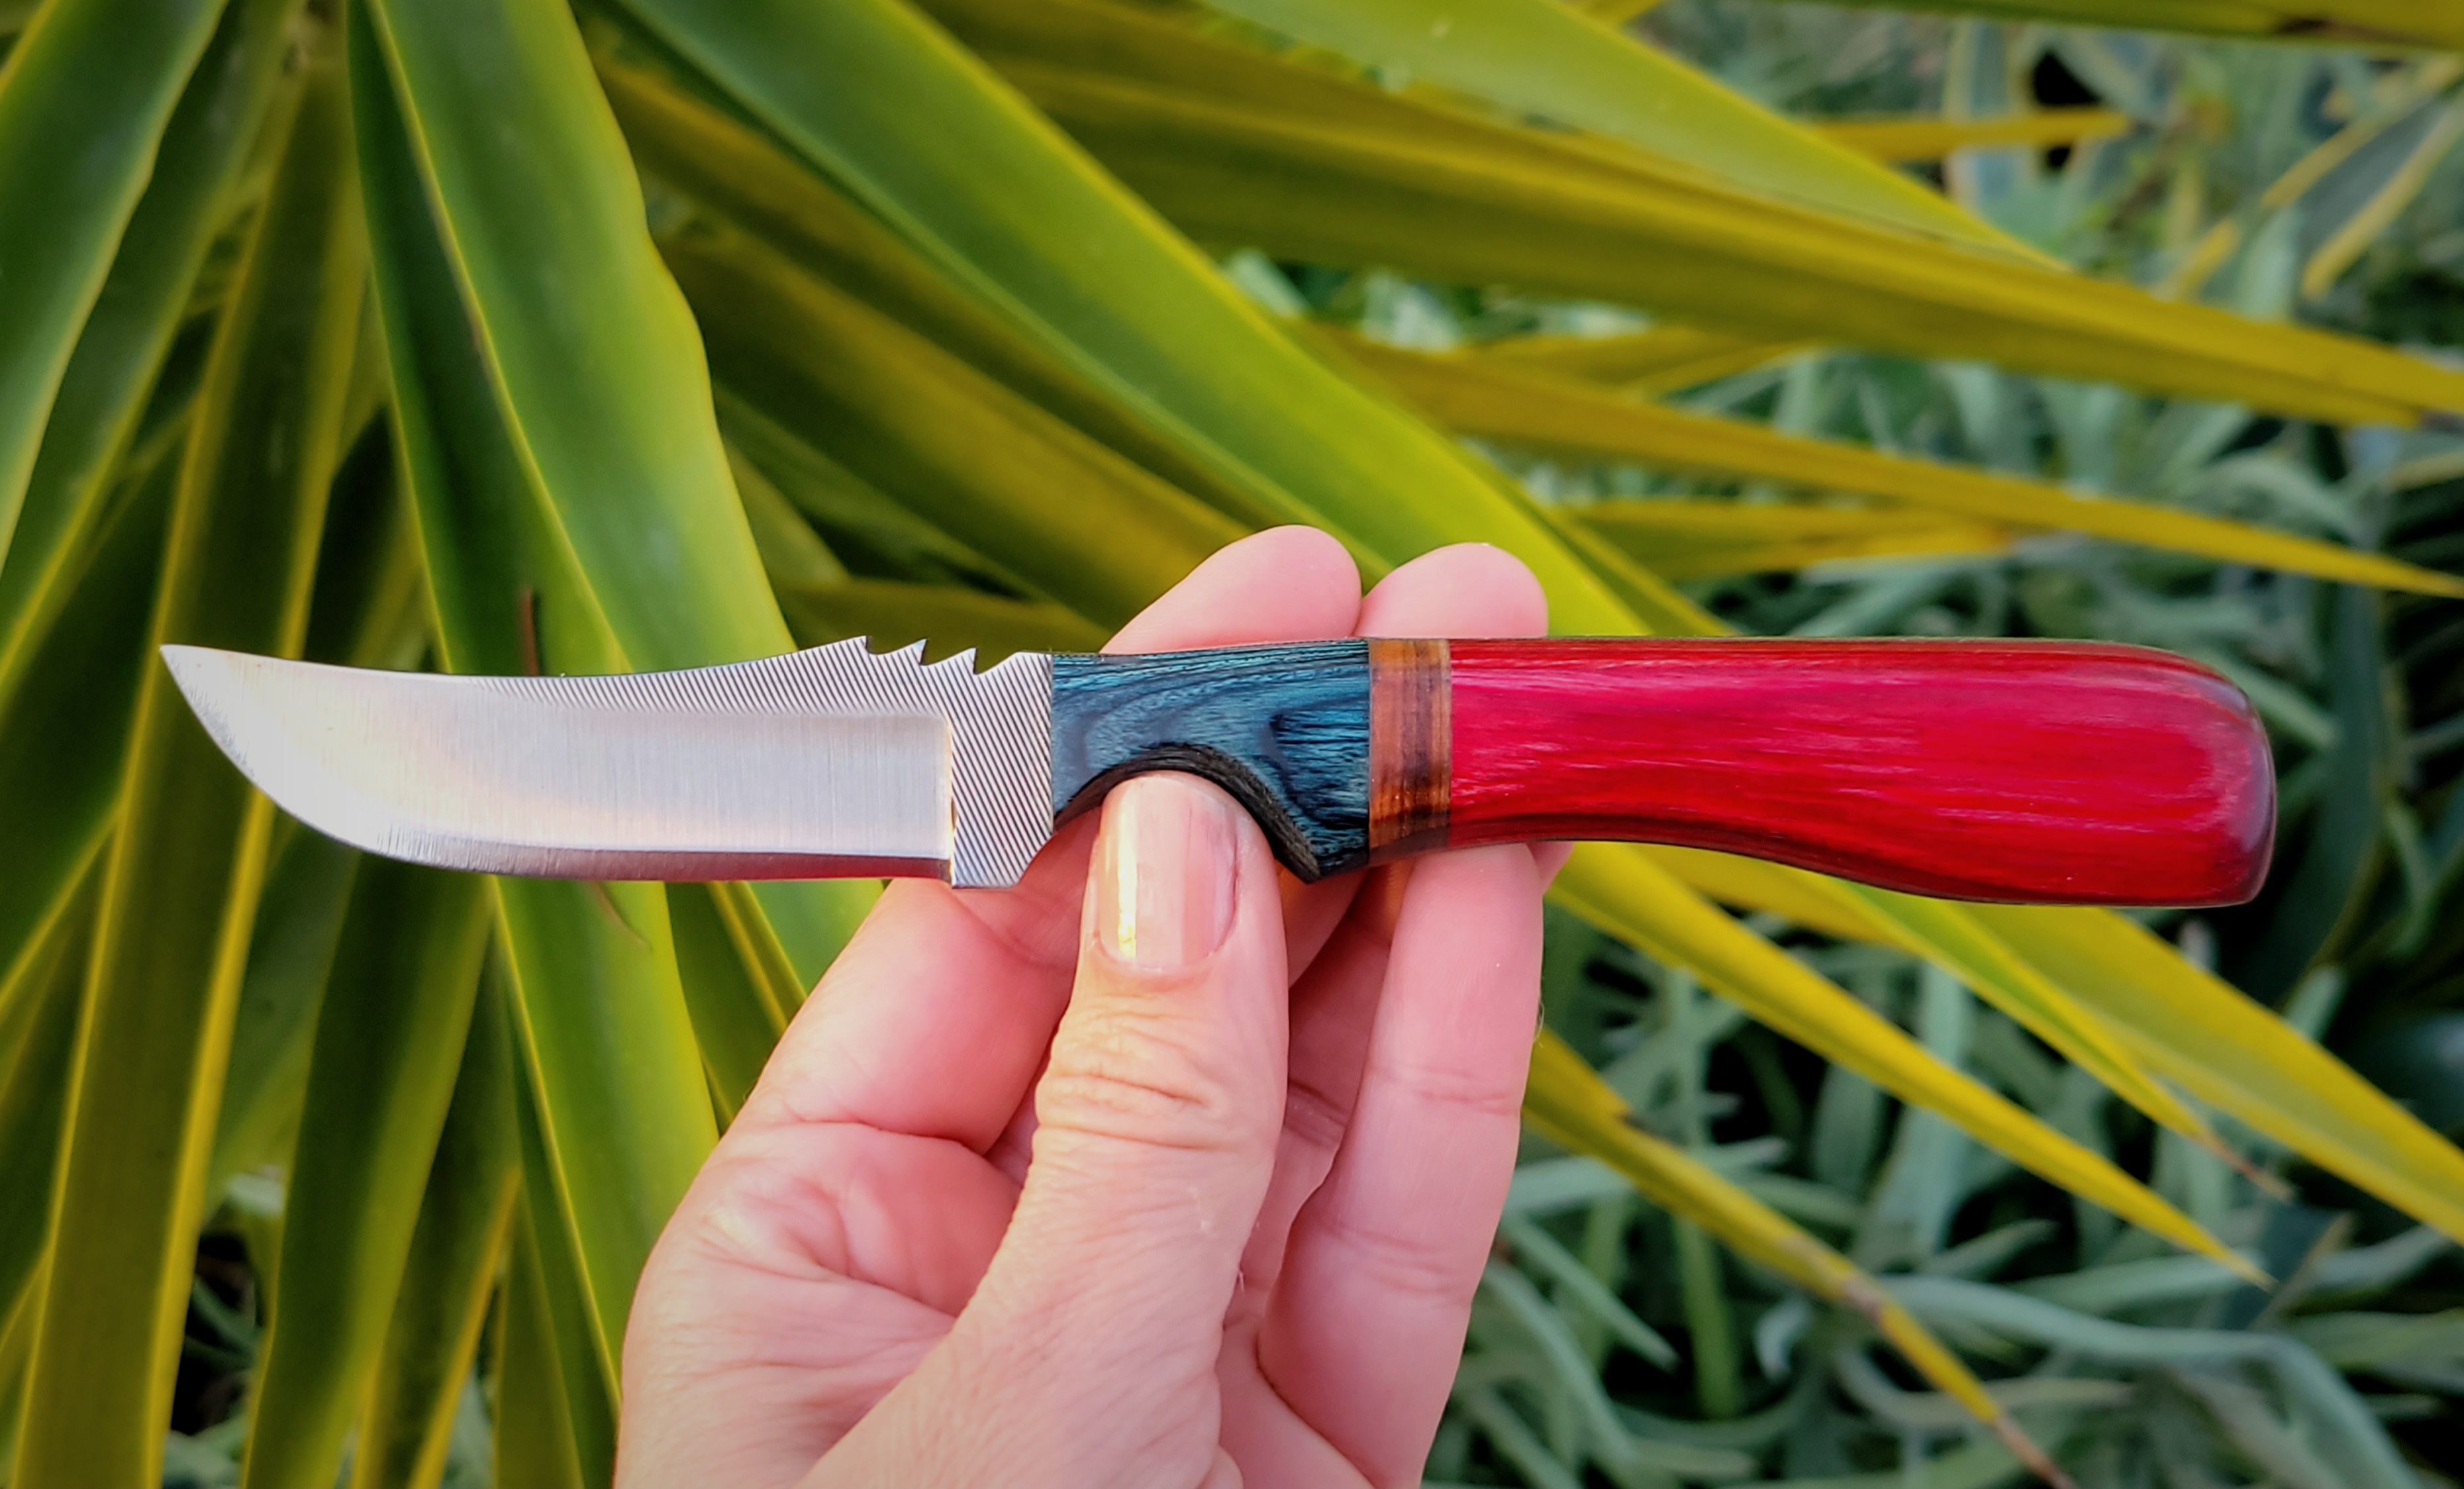 MY USA KNIFE-RED-POLISHED